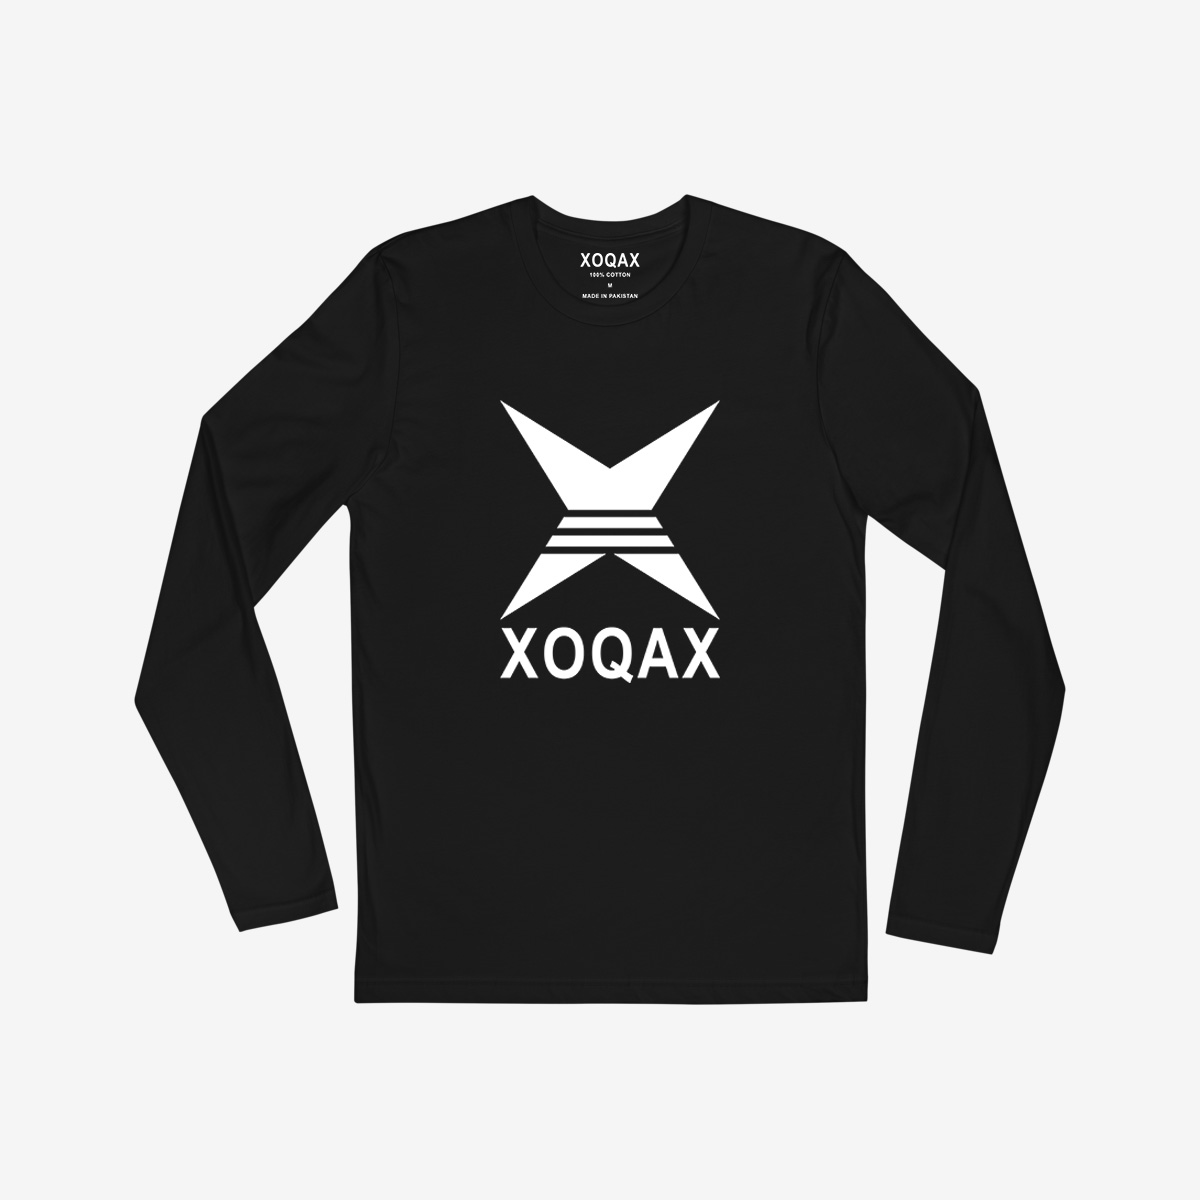 xoqax-full-sleeve-graphic-t-shirt-black